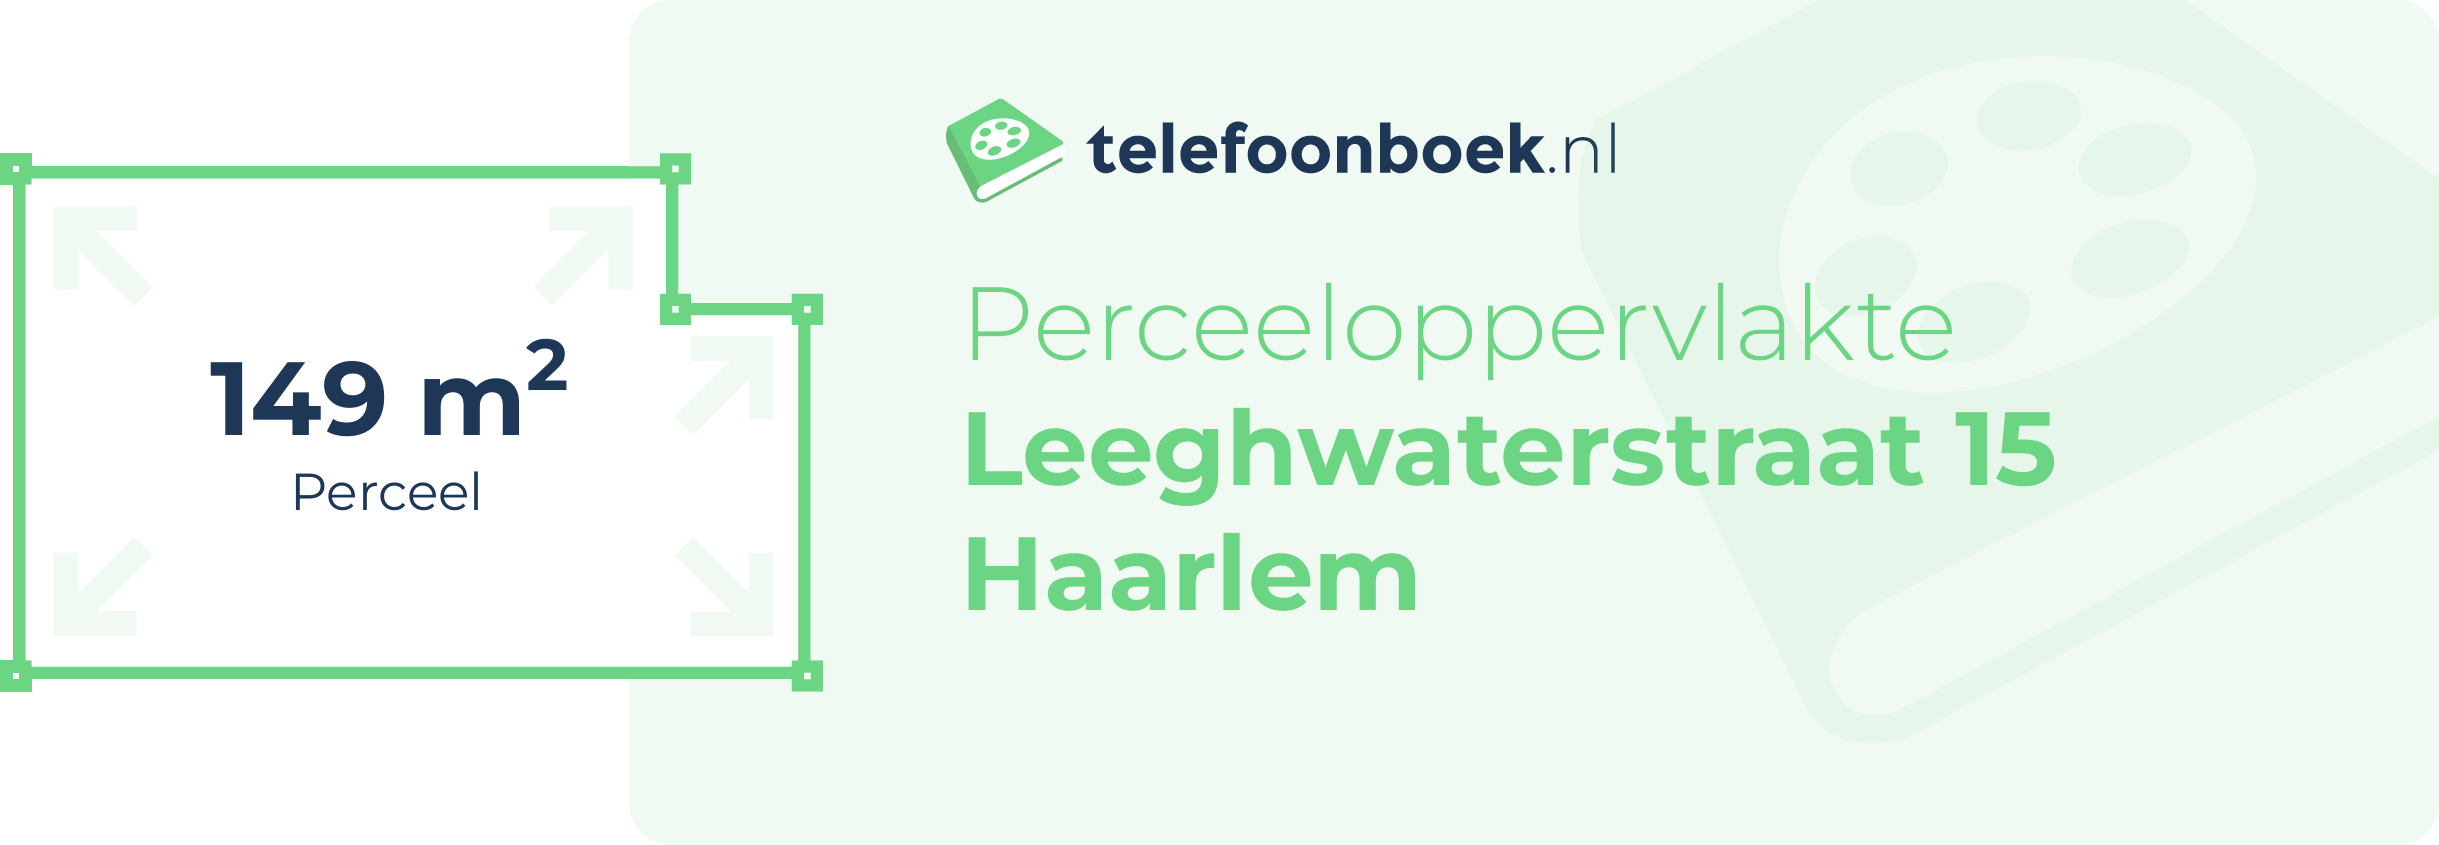 Perceeloppervlakte Leeghwaterstraat 15 Haarlem